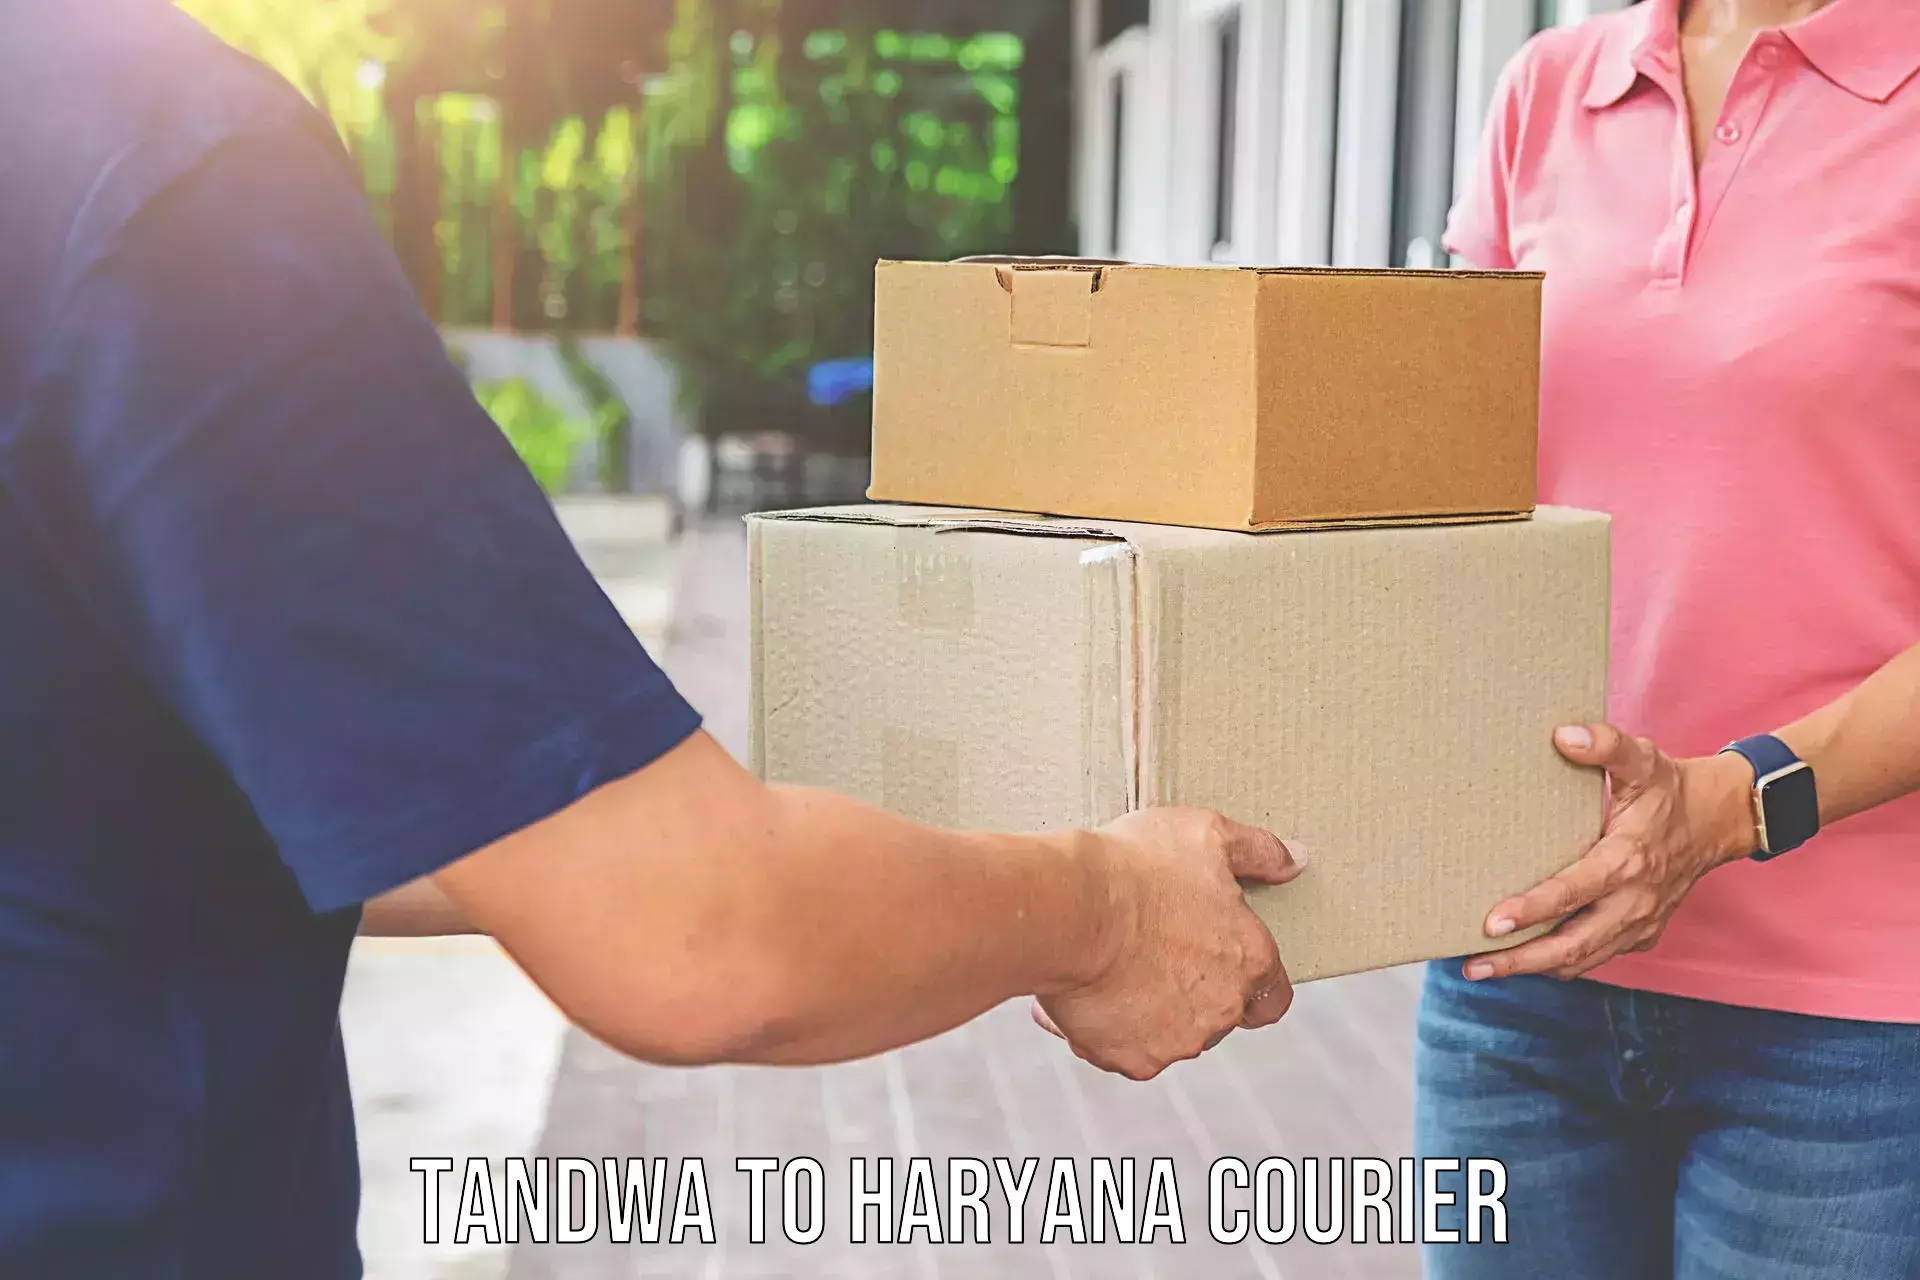 Reliable movers Tandwa to NCR Haryana